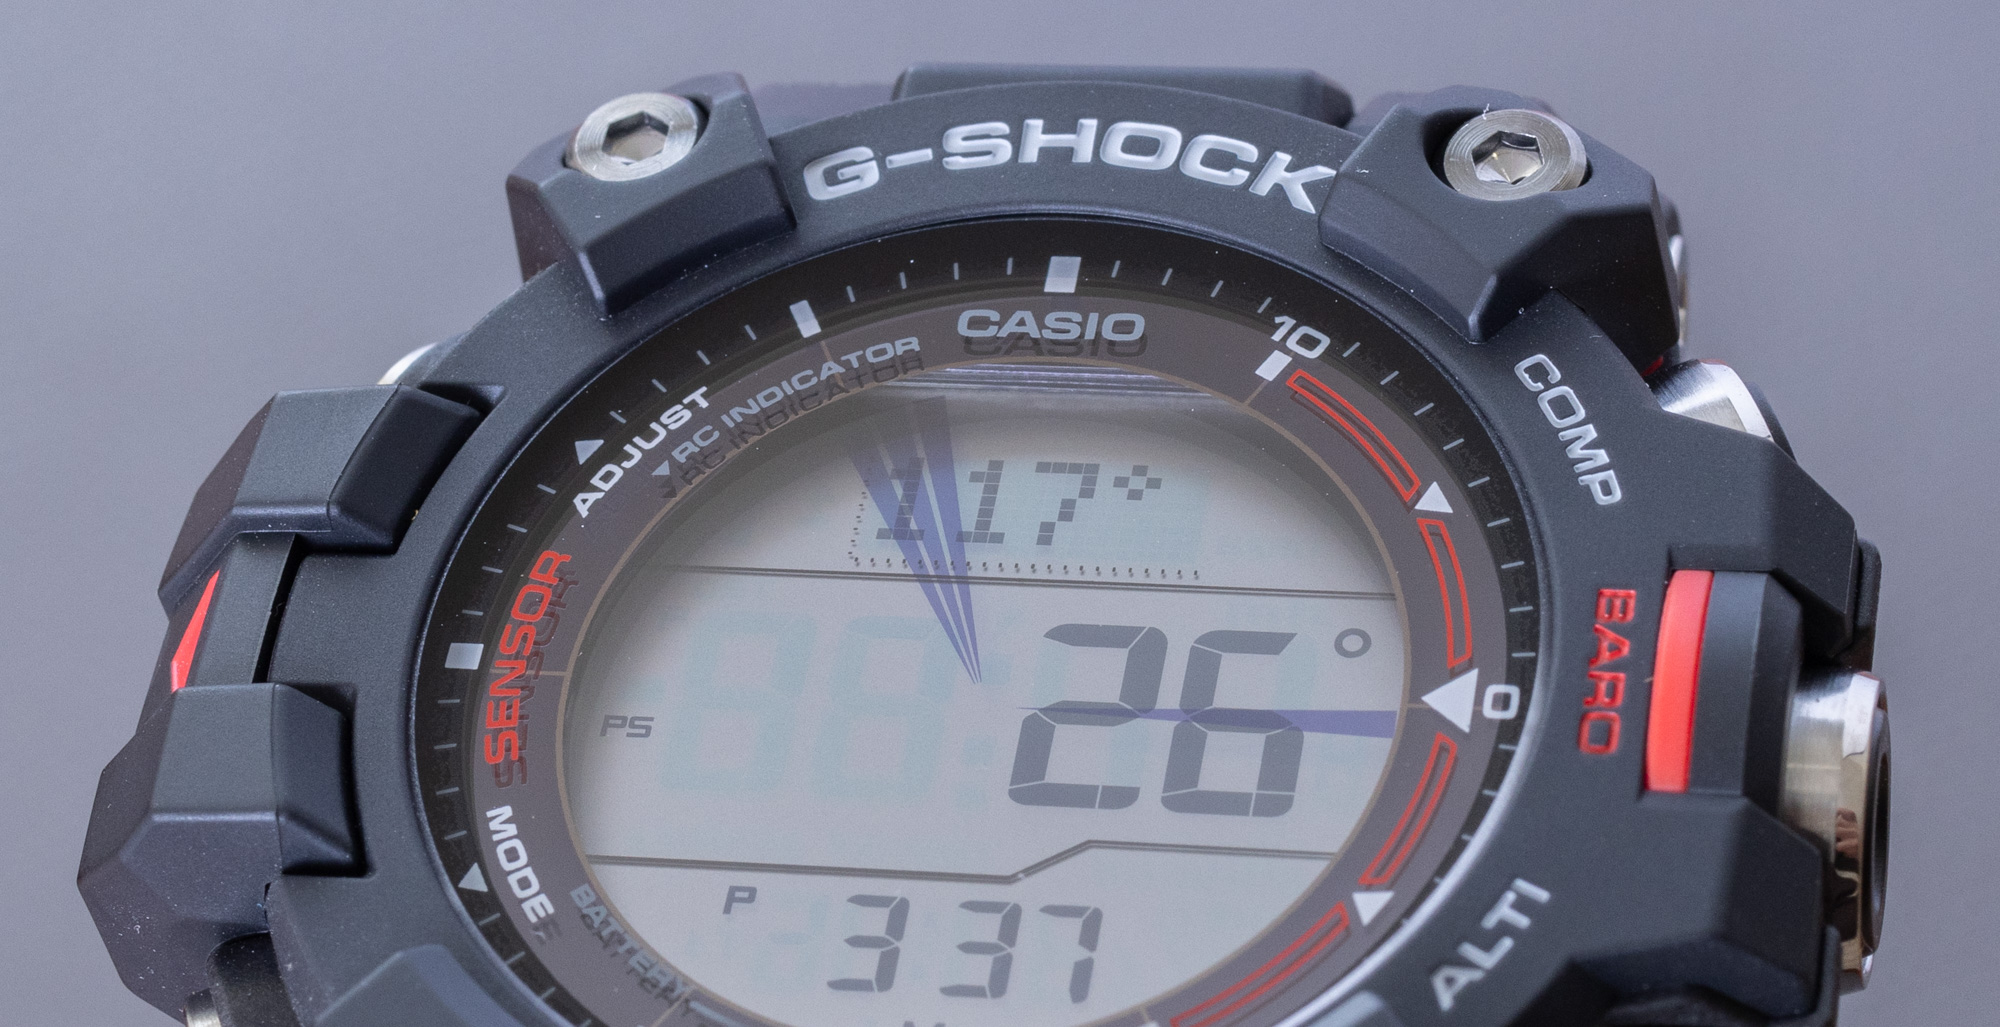 Обзор часов: Casio G-Shock Mudman GW-9500